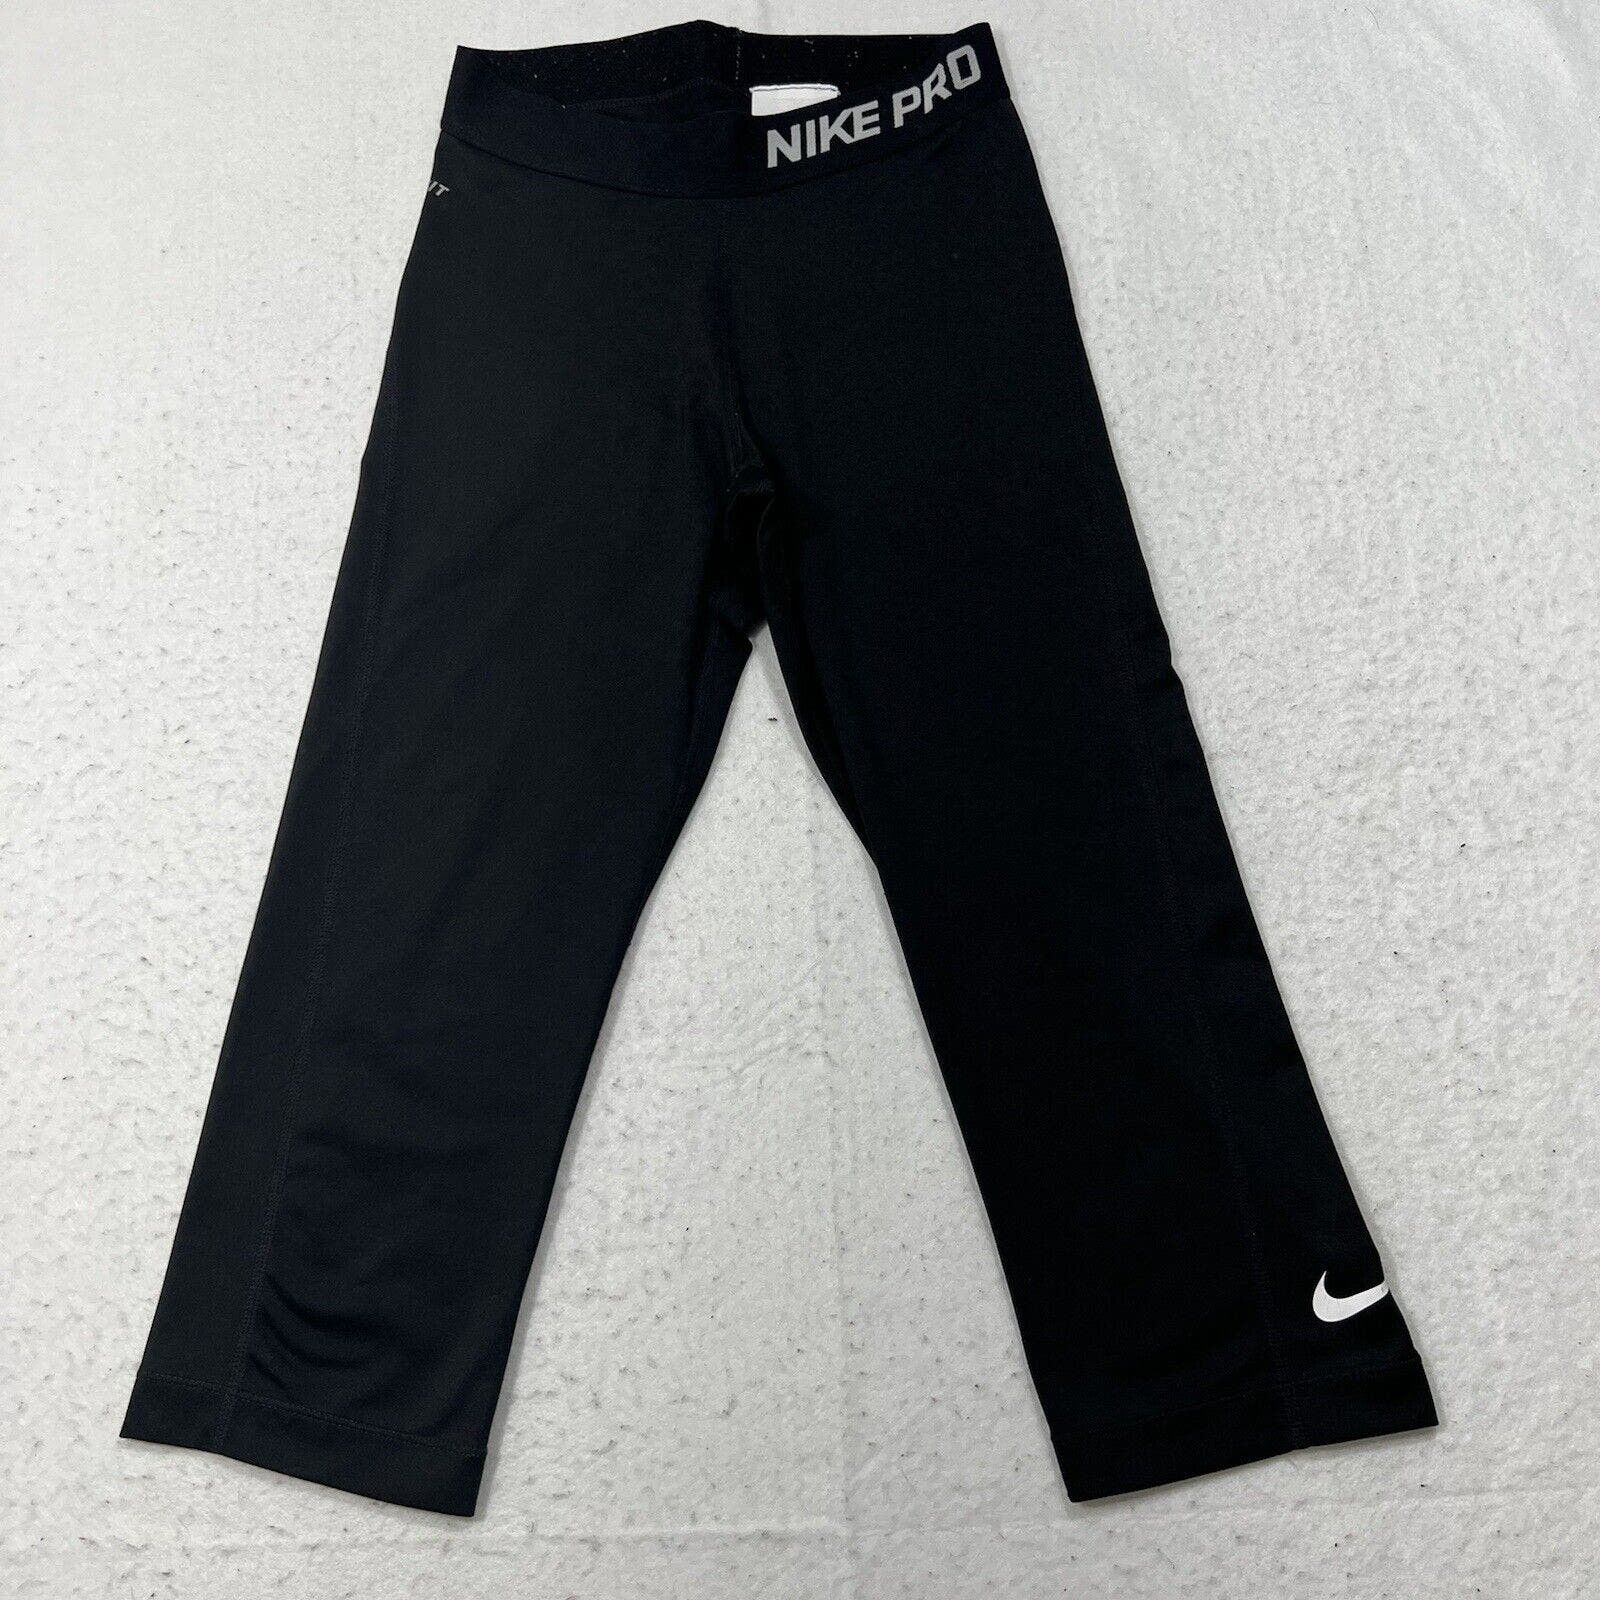 Nike Nike Pro Dri Fit Capri Black & White Leggings Logo Pants